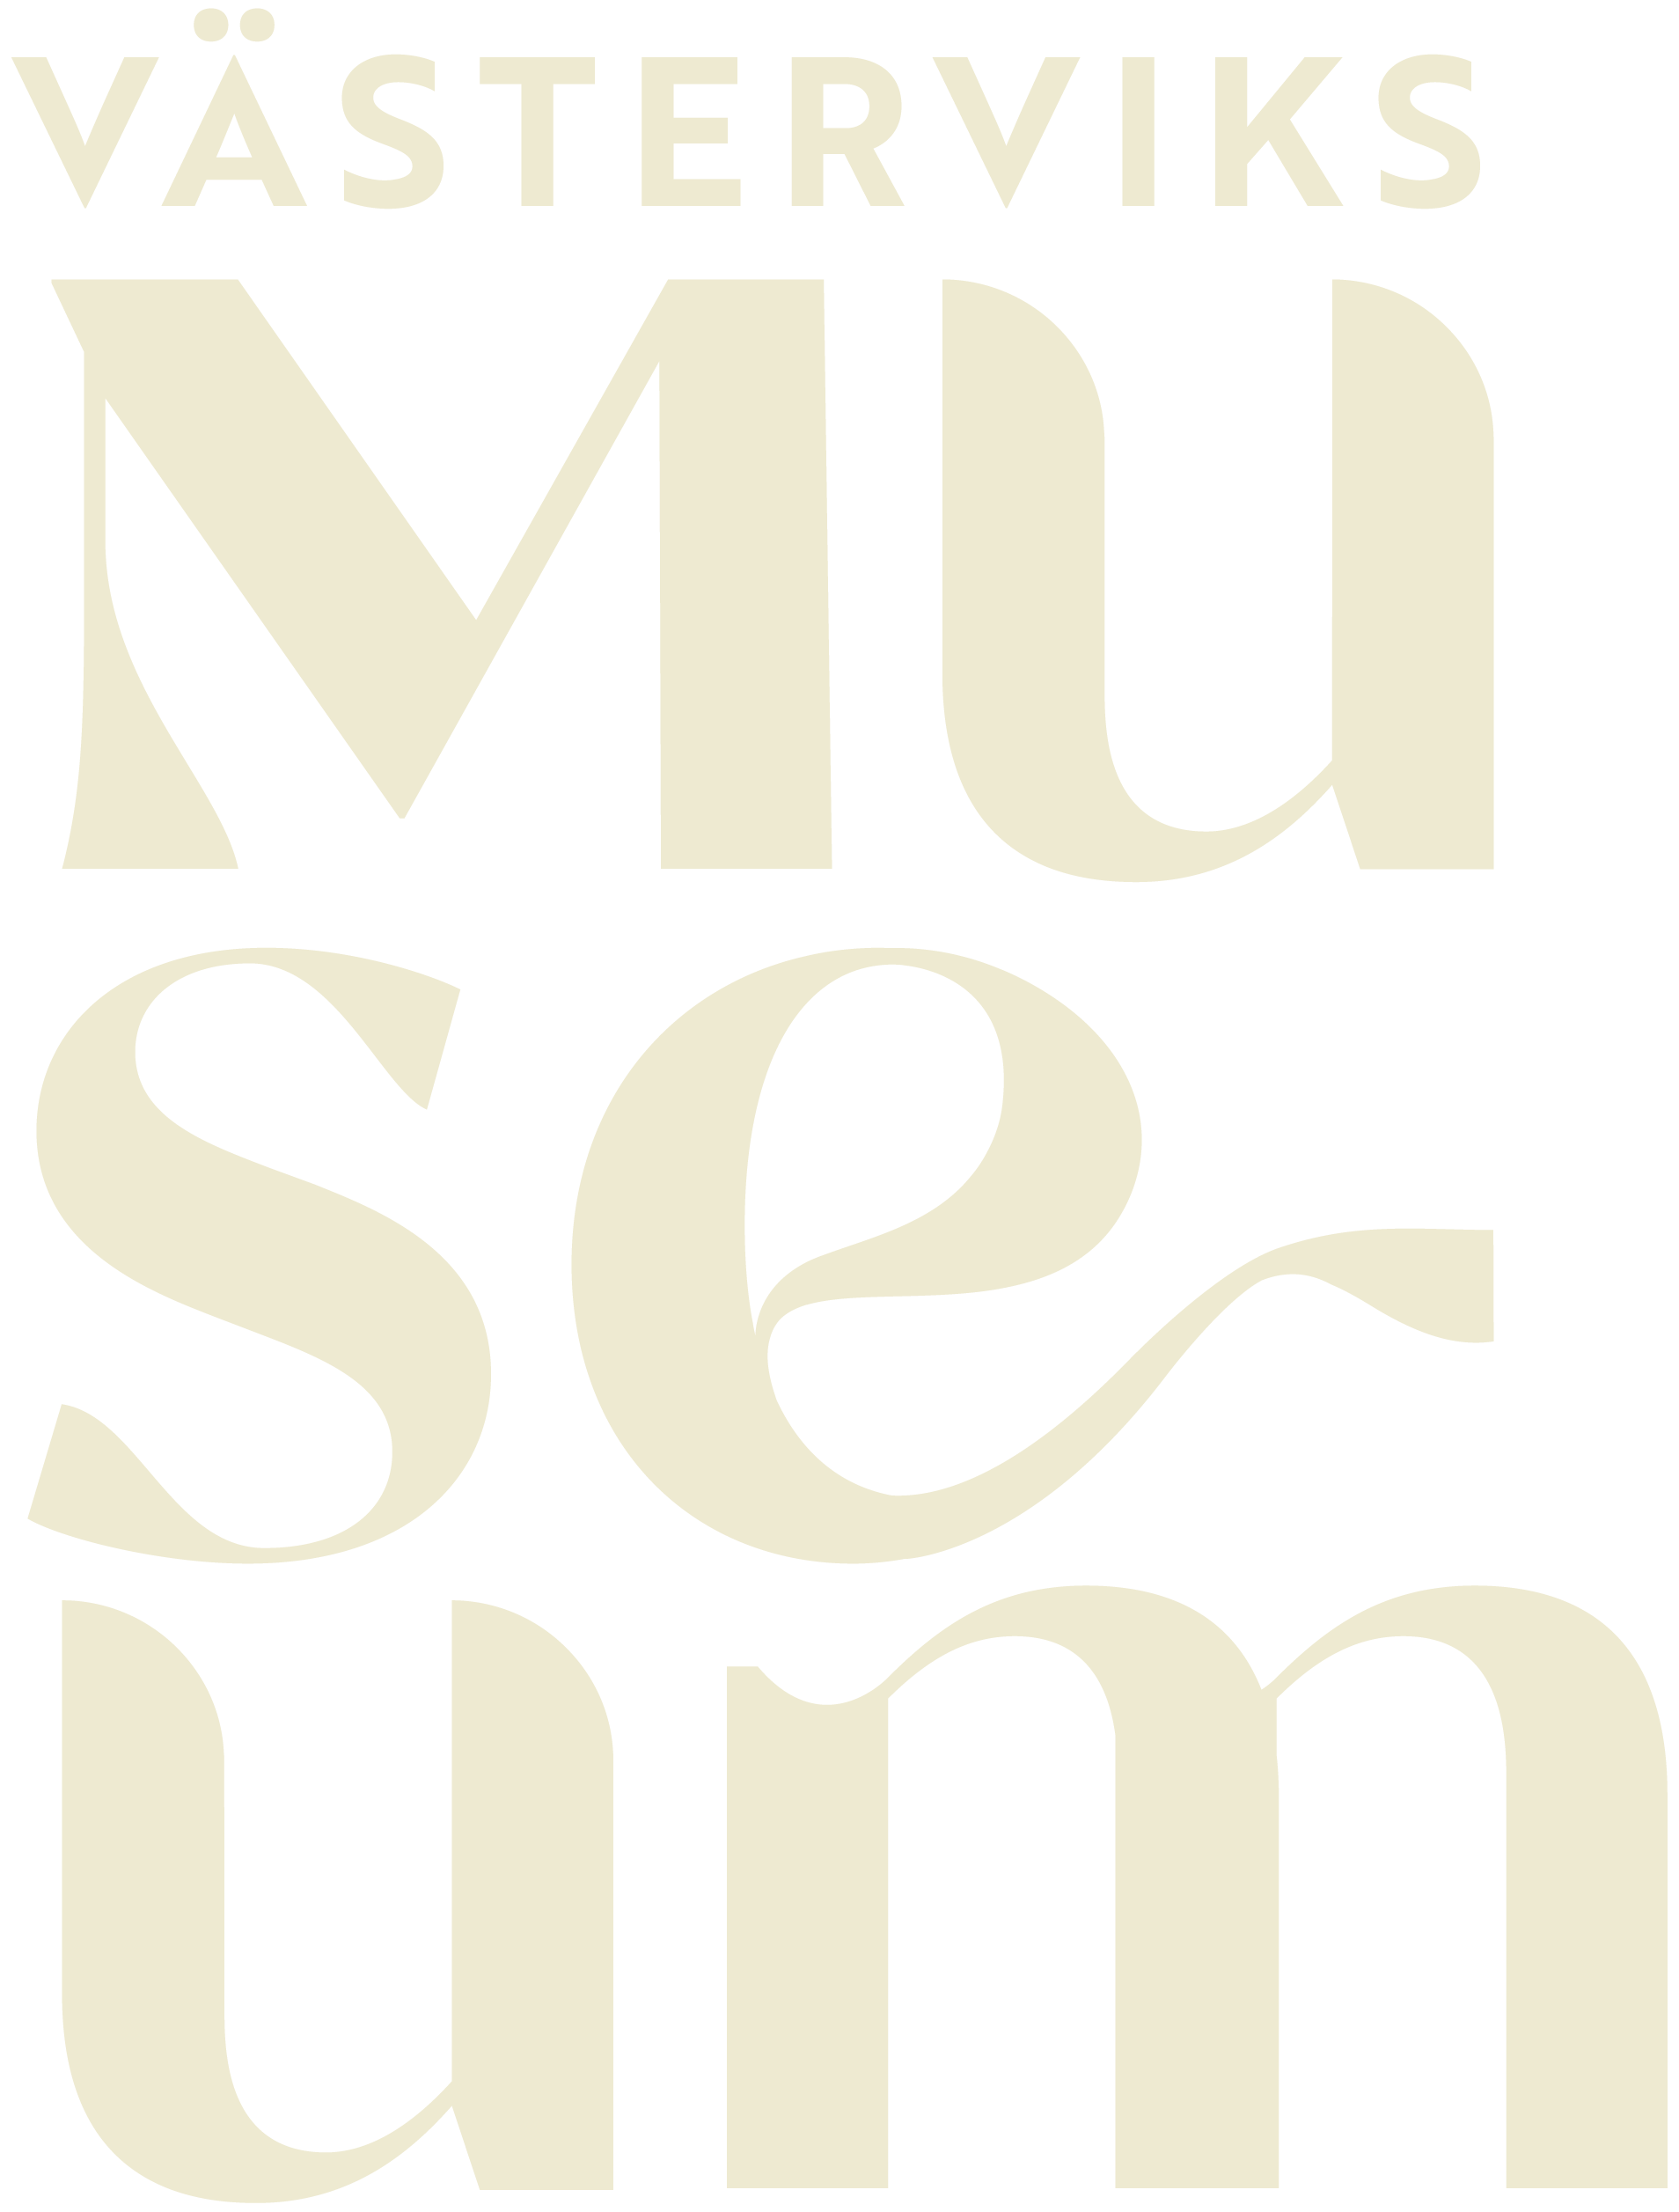 Västerviks Museum logo